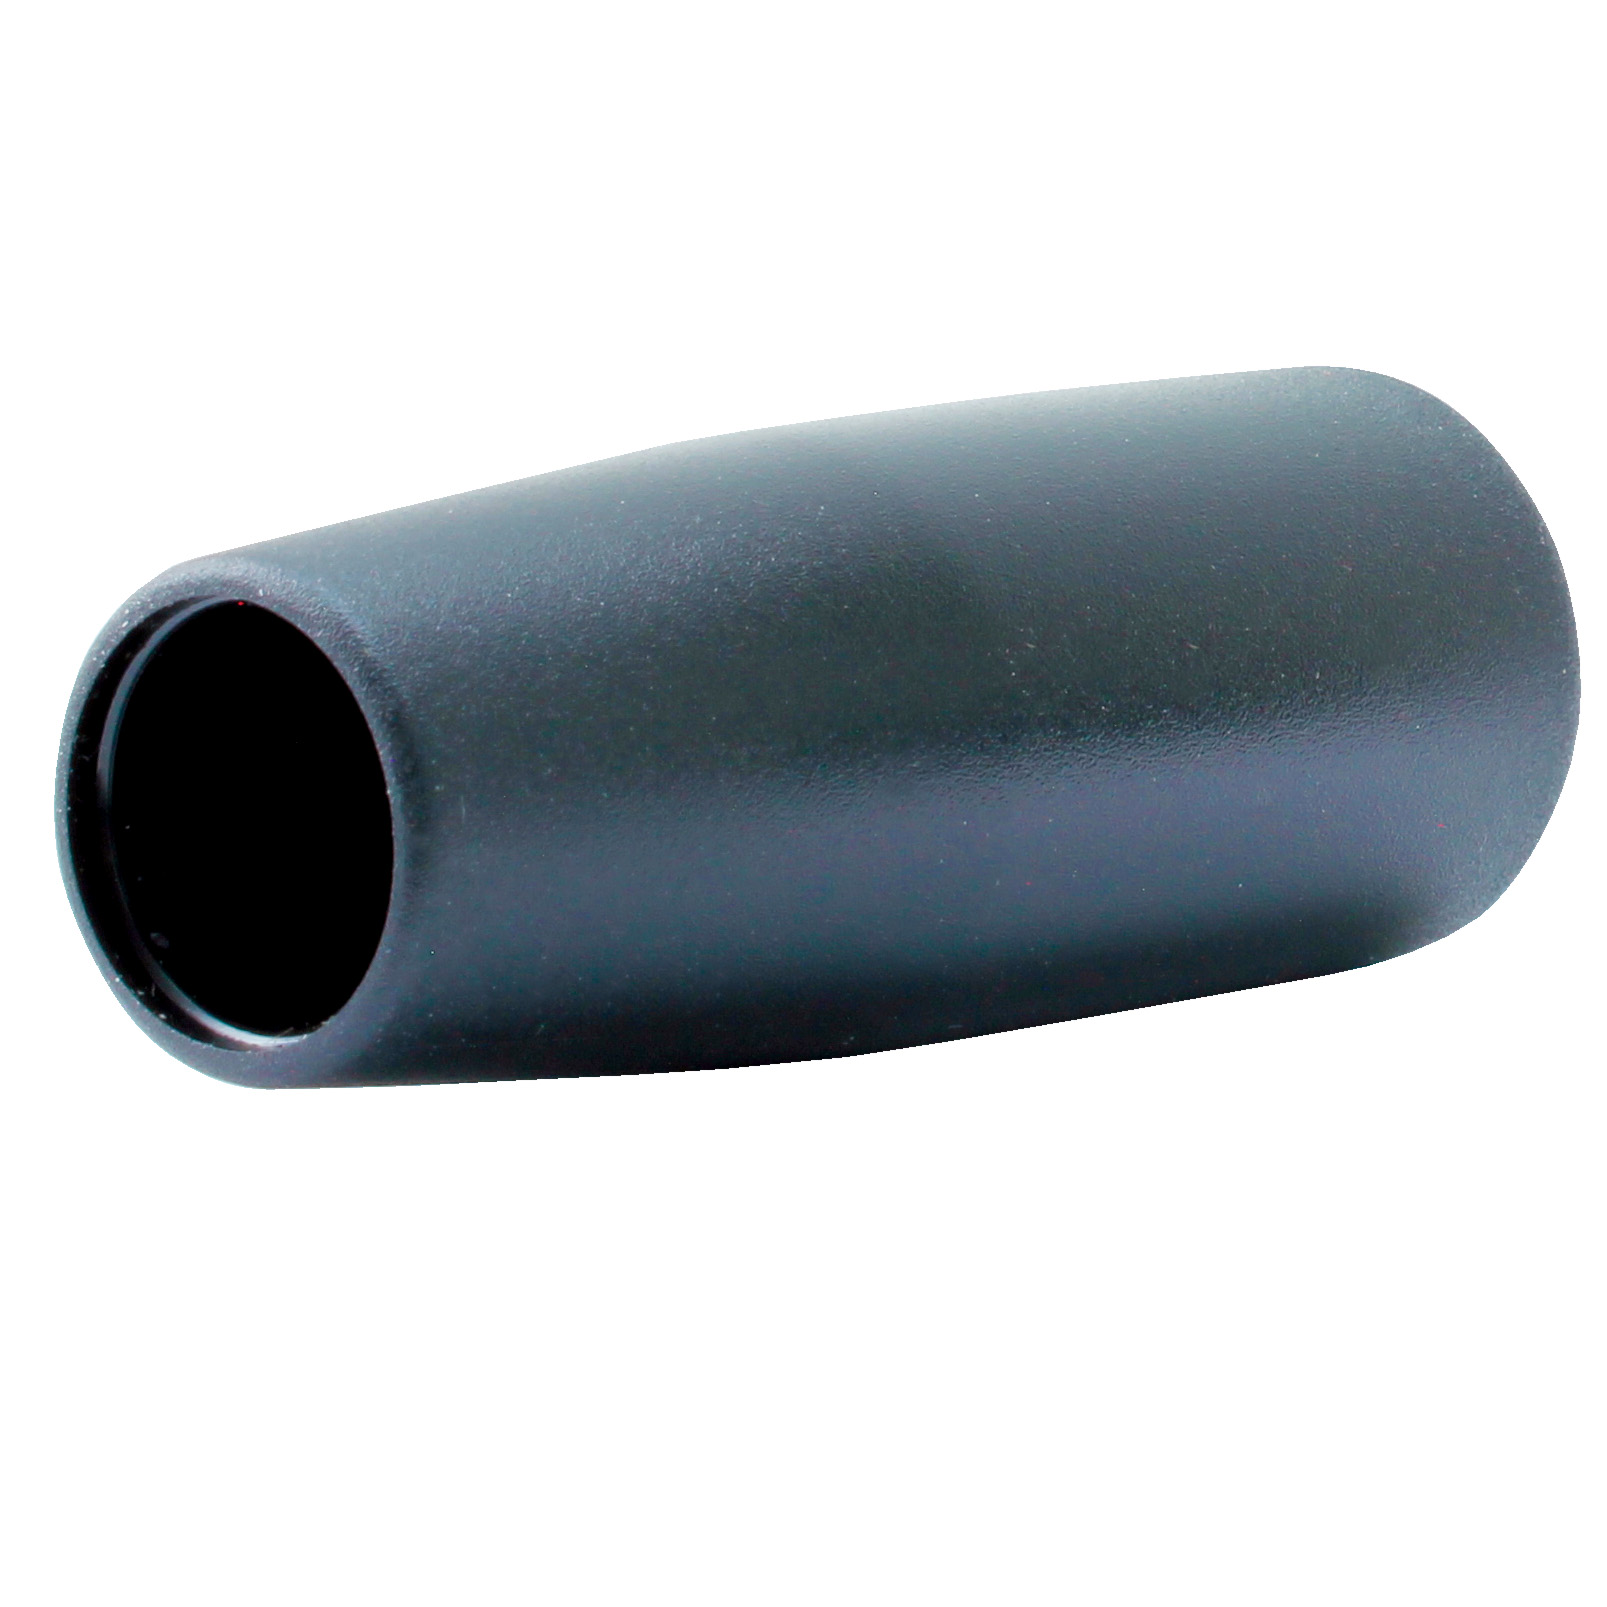 Conical flexible shaft handlee Ø22 - Black PVC - Shafts Ø7 to Ø14 - 